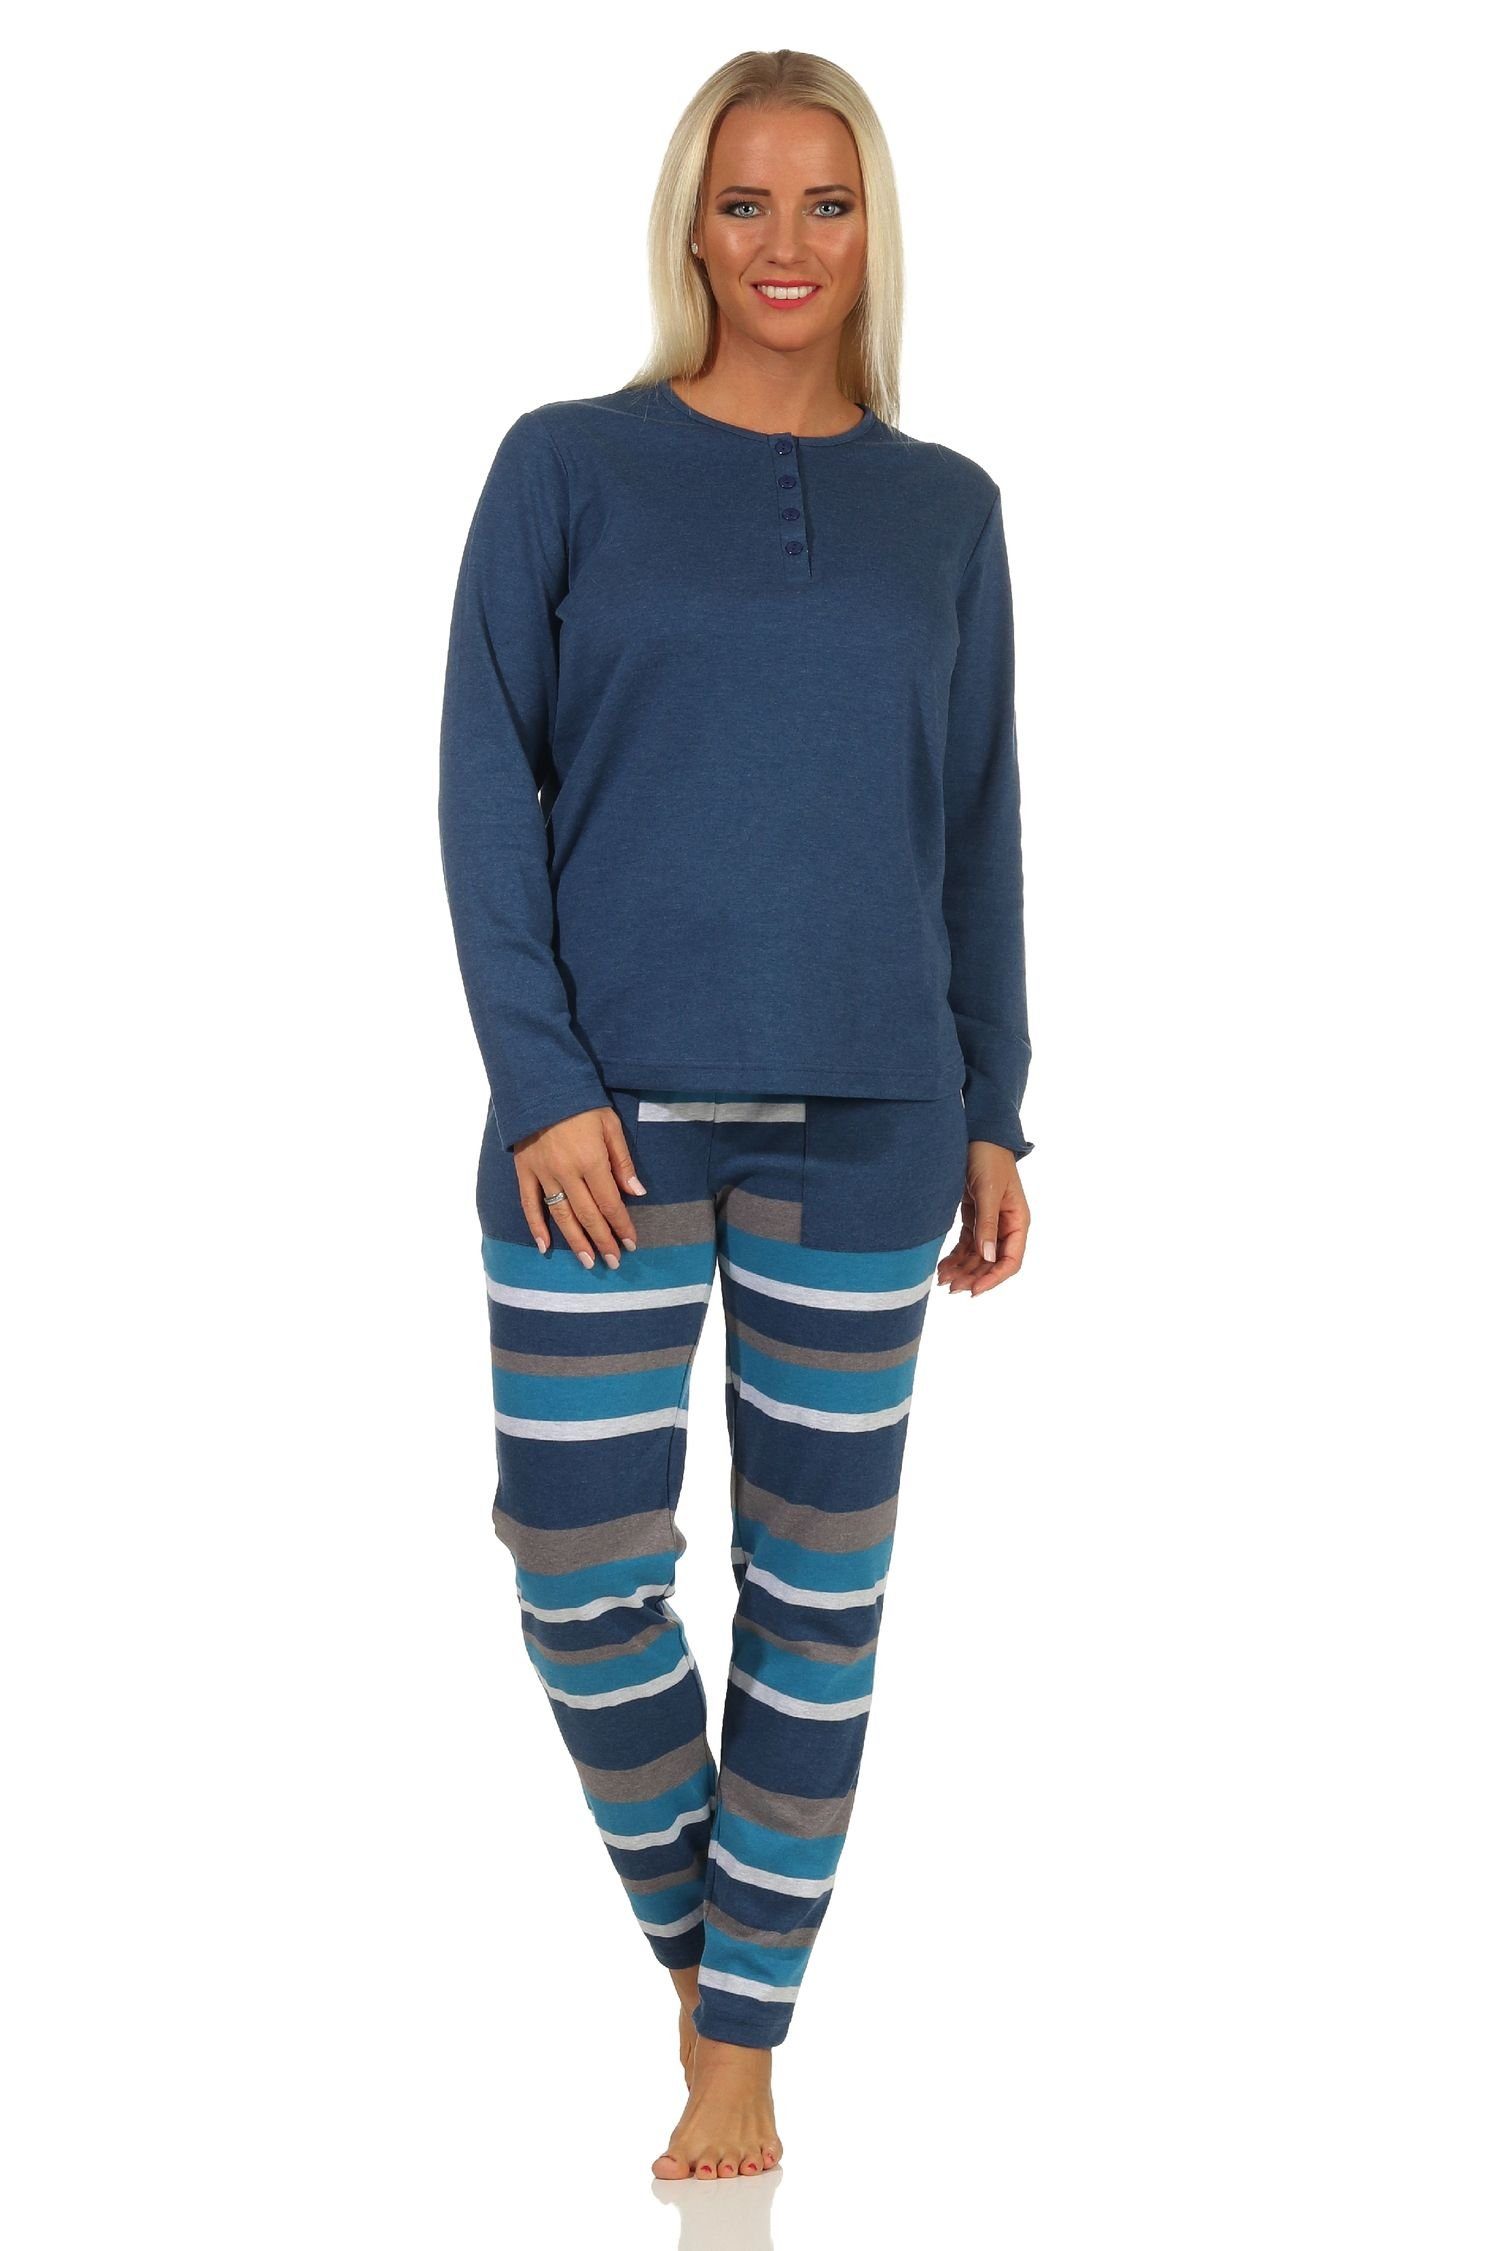 Kuschel Hose Normann Interlock Damen Qualität gestreifter Pyjama Schlafanzug blau mit in